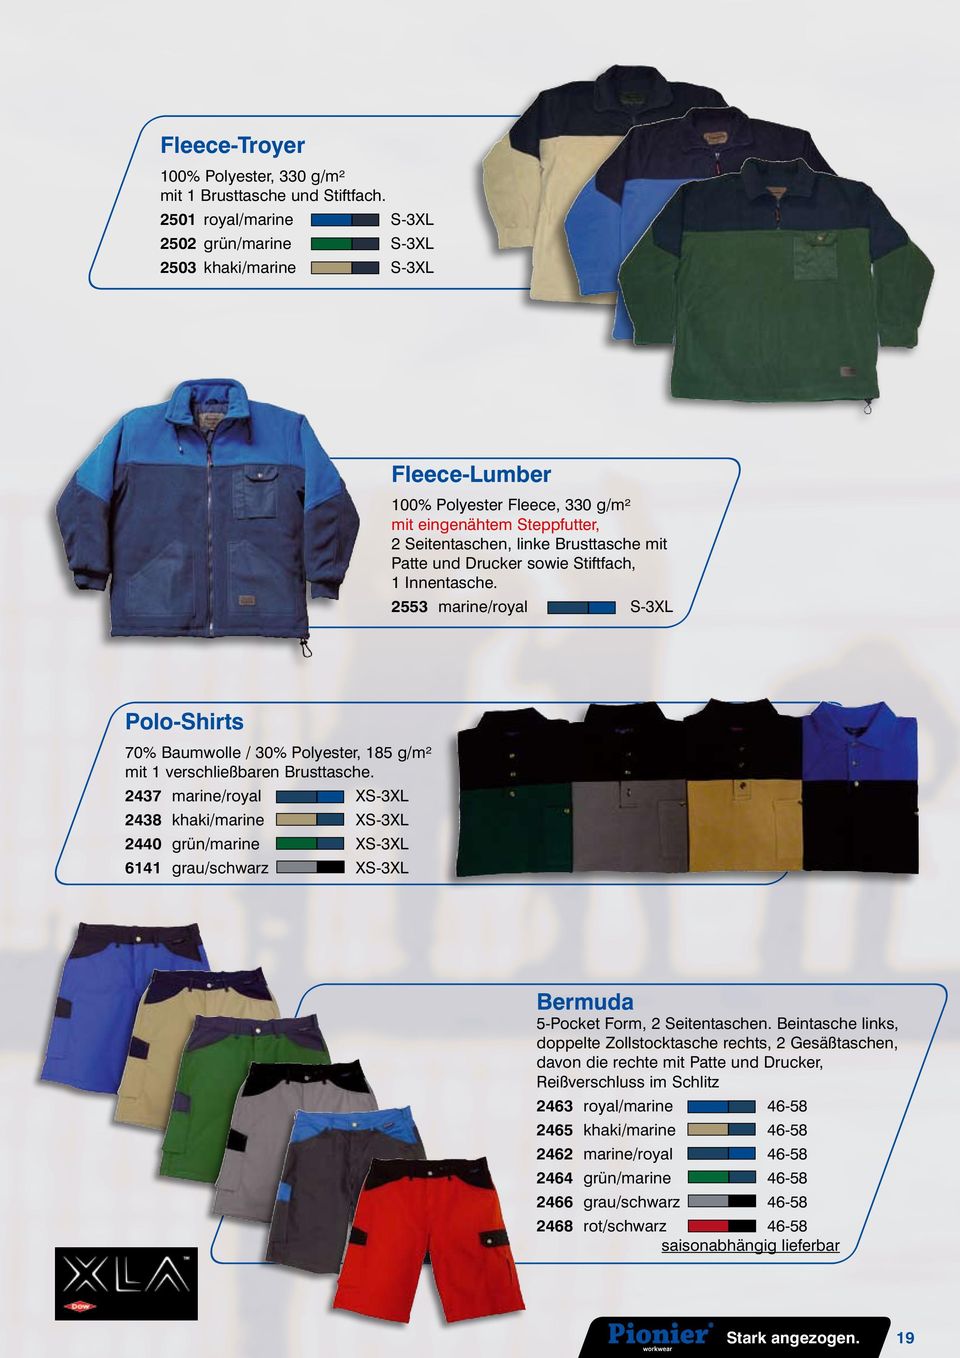 Drucker sowie Stiftfach, 1 Innentasche. 2553 marine/royal S-3XL Polo-Shirts 70% Baumwolle / 30% Polyester, 185 g/m² mit 1 verschließbaren Brusttasche.